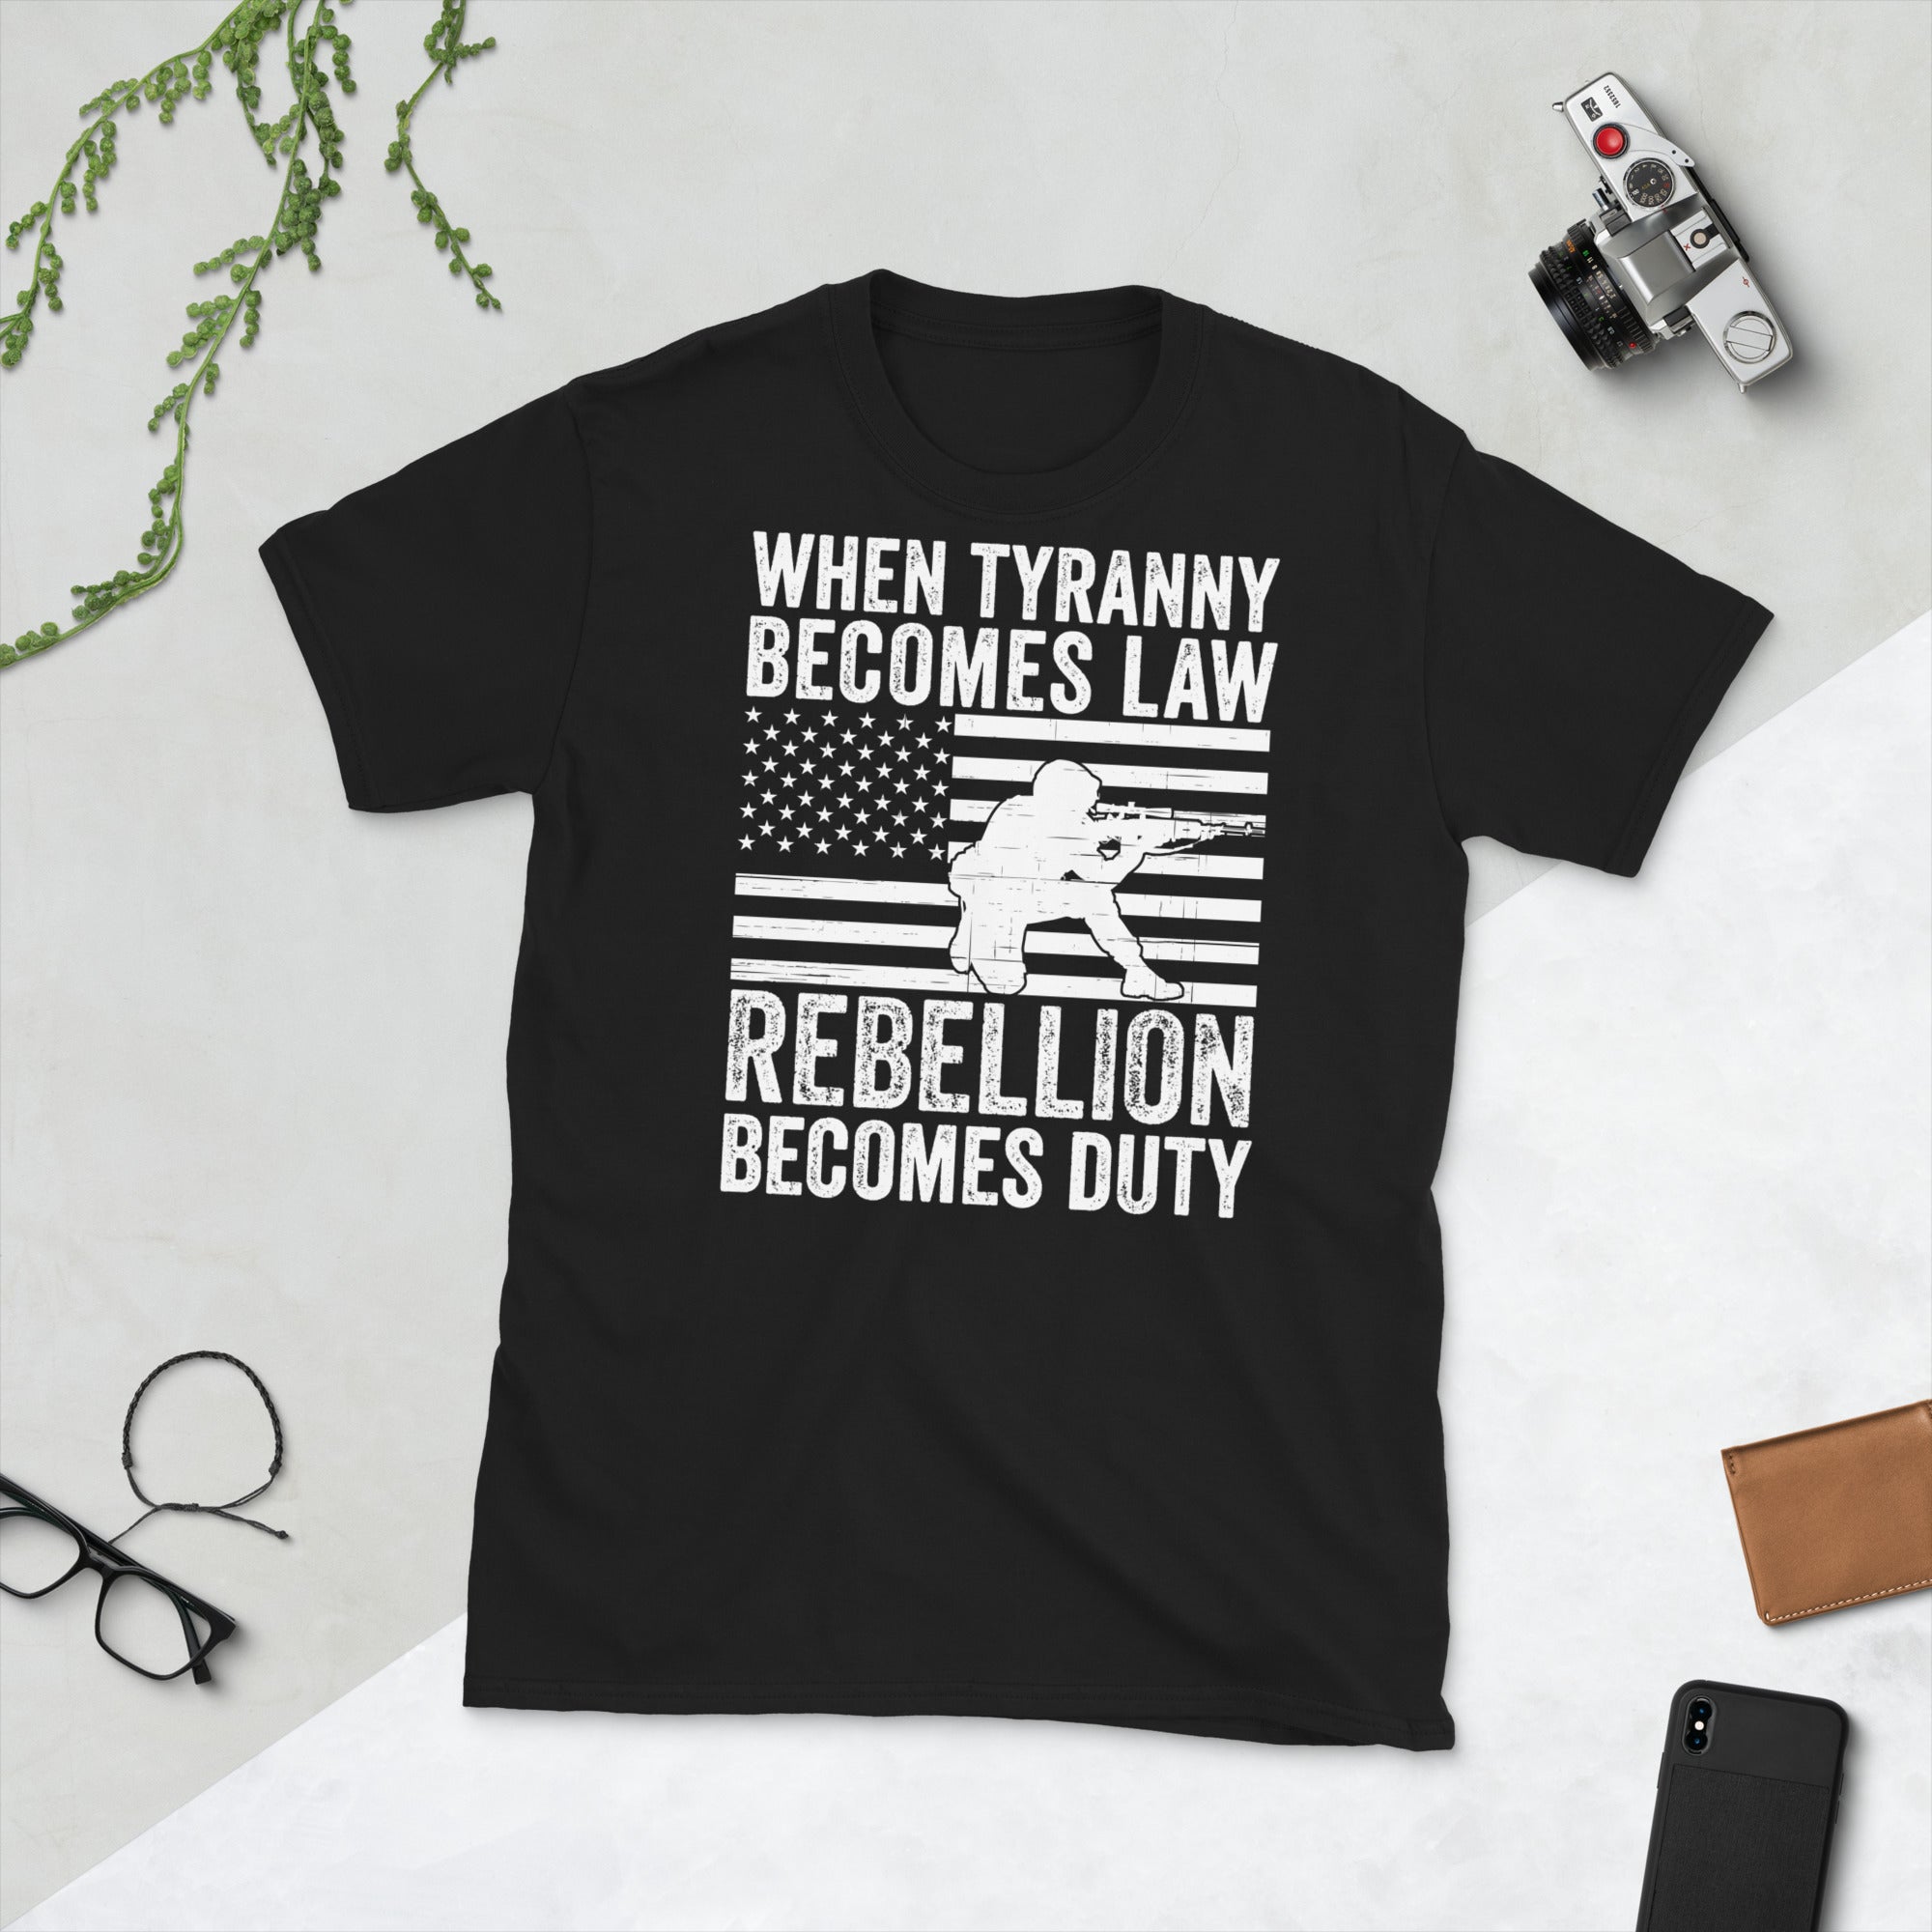 Tyrannei Shirt, Rebellion Shirt, Wenn Tyrannei zum Gesetz wird, wird Rebellion zur Pflicht, 1776 Shirt, Thomas Jefferson Shirt, Politische Shirts